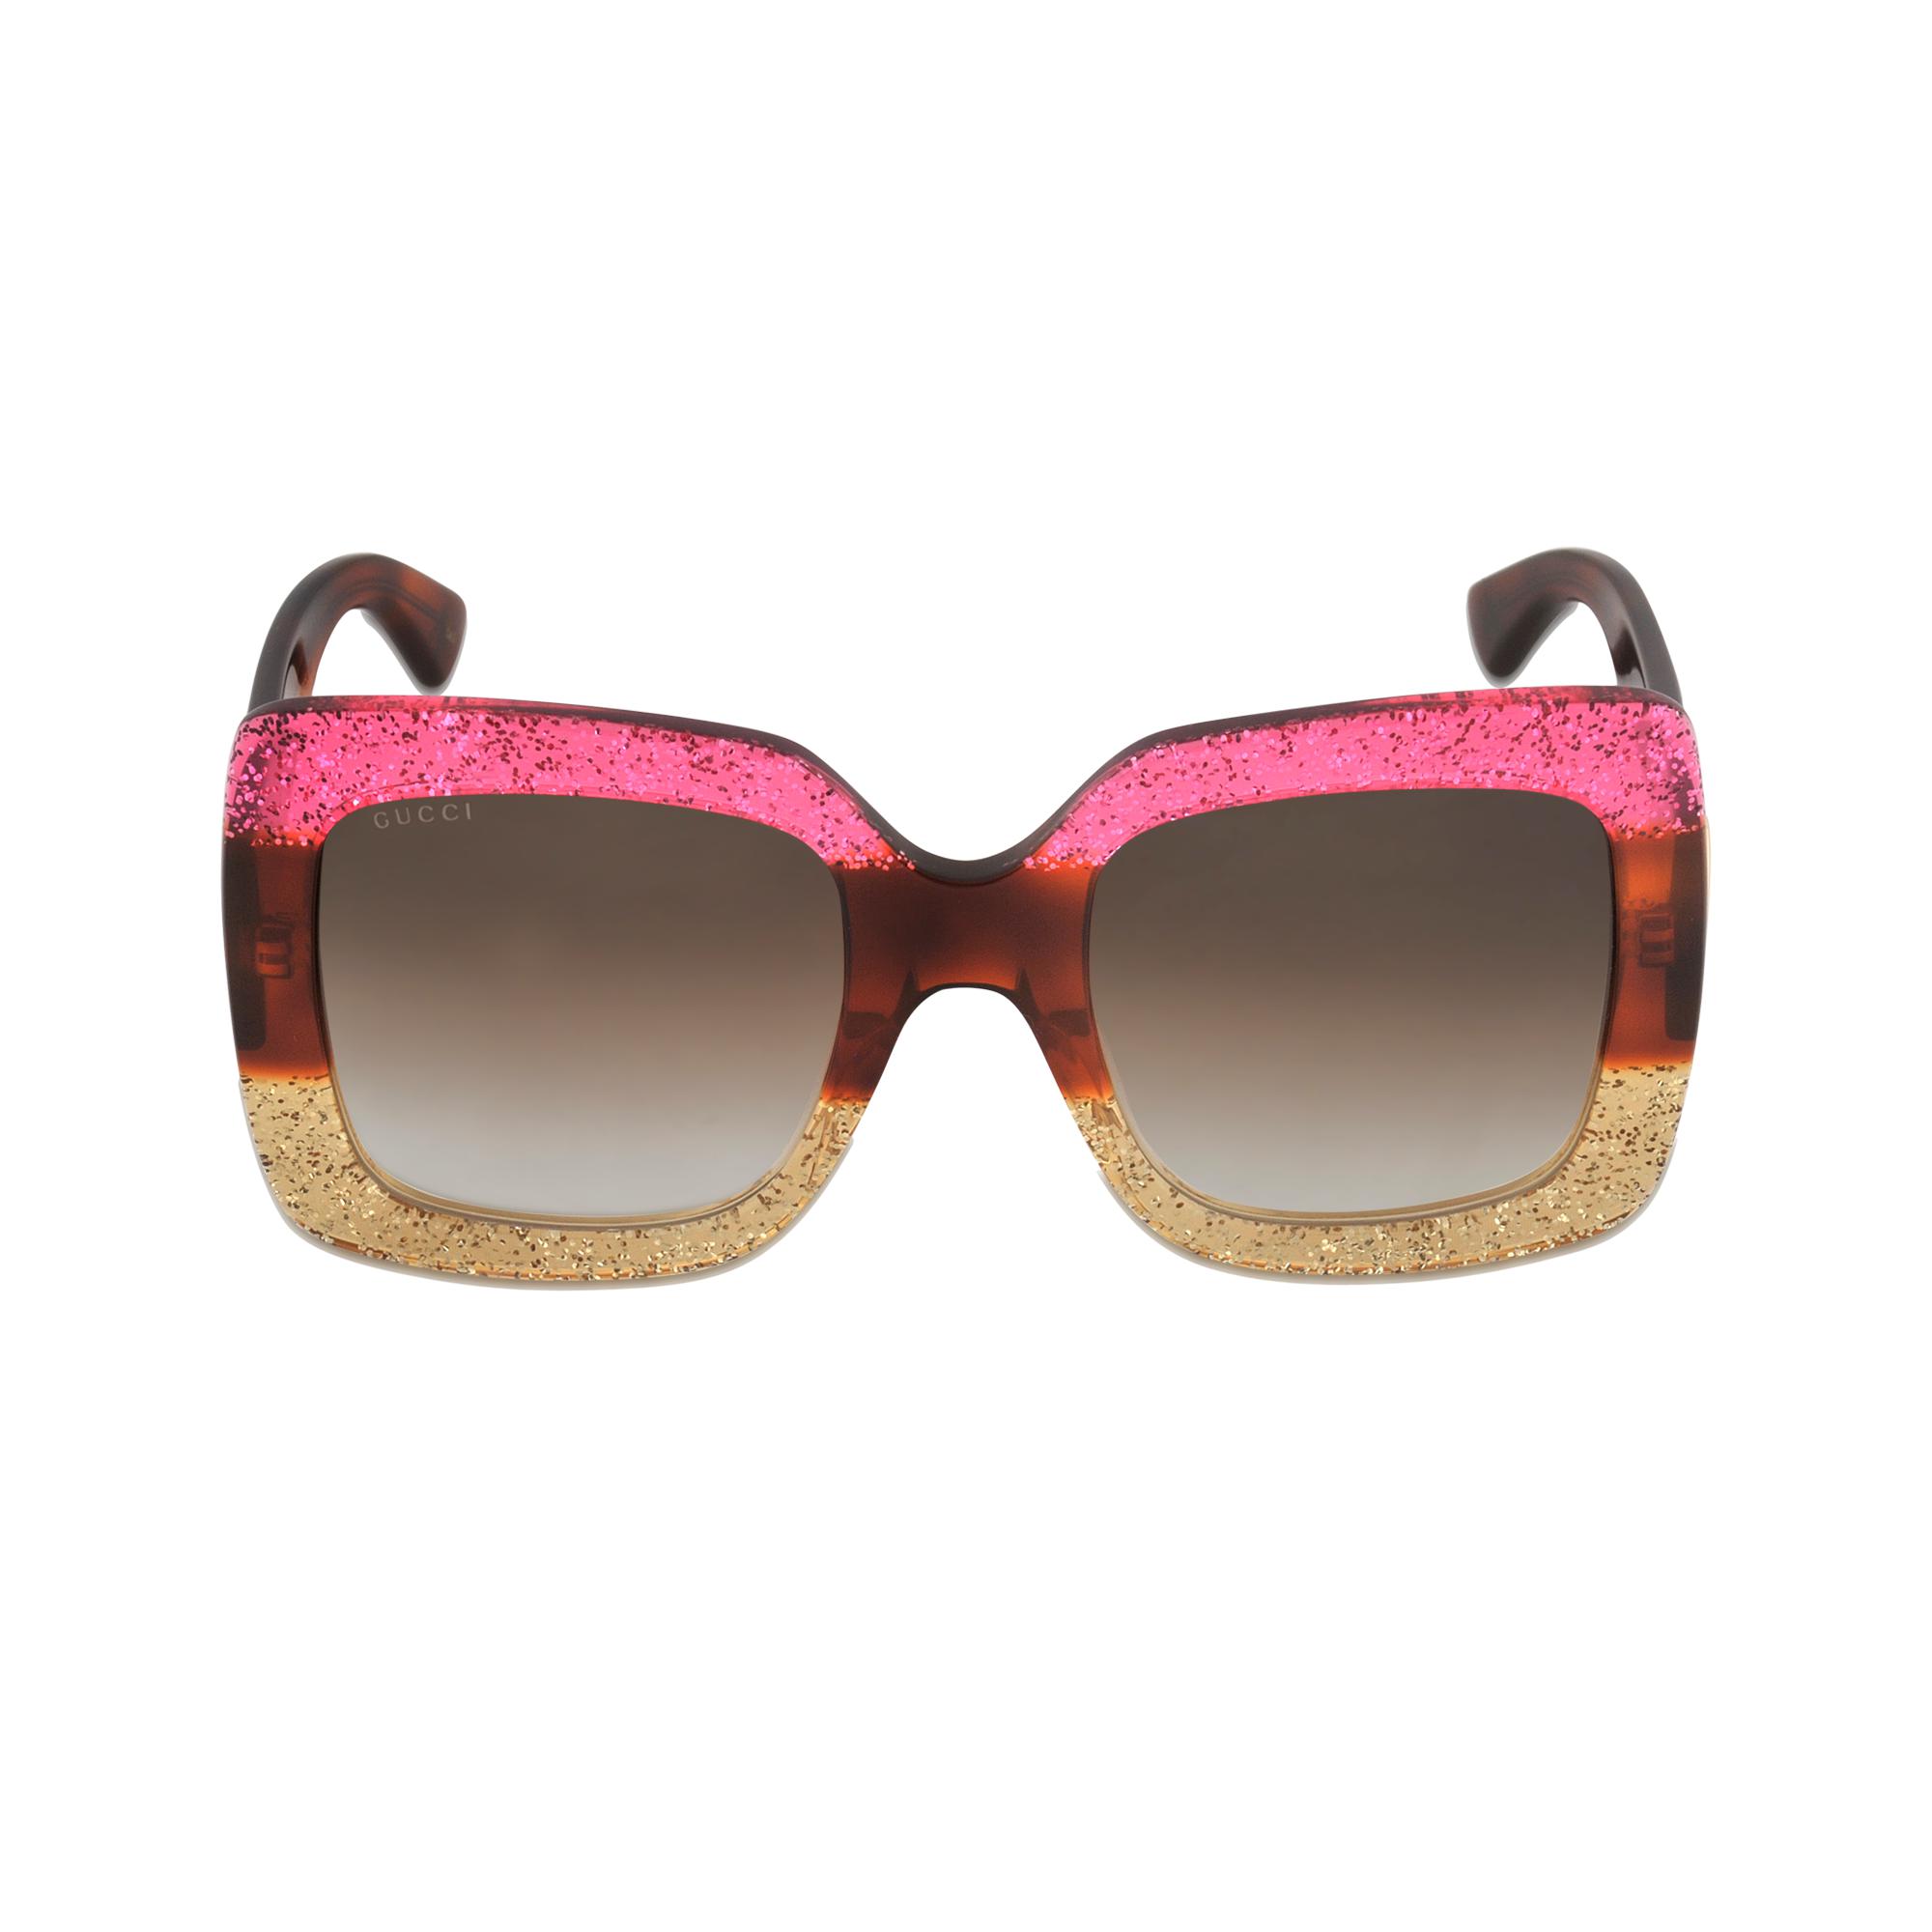 Gucci Sunglasses Gg0083s-002 | Lyst